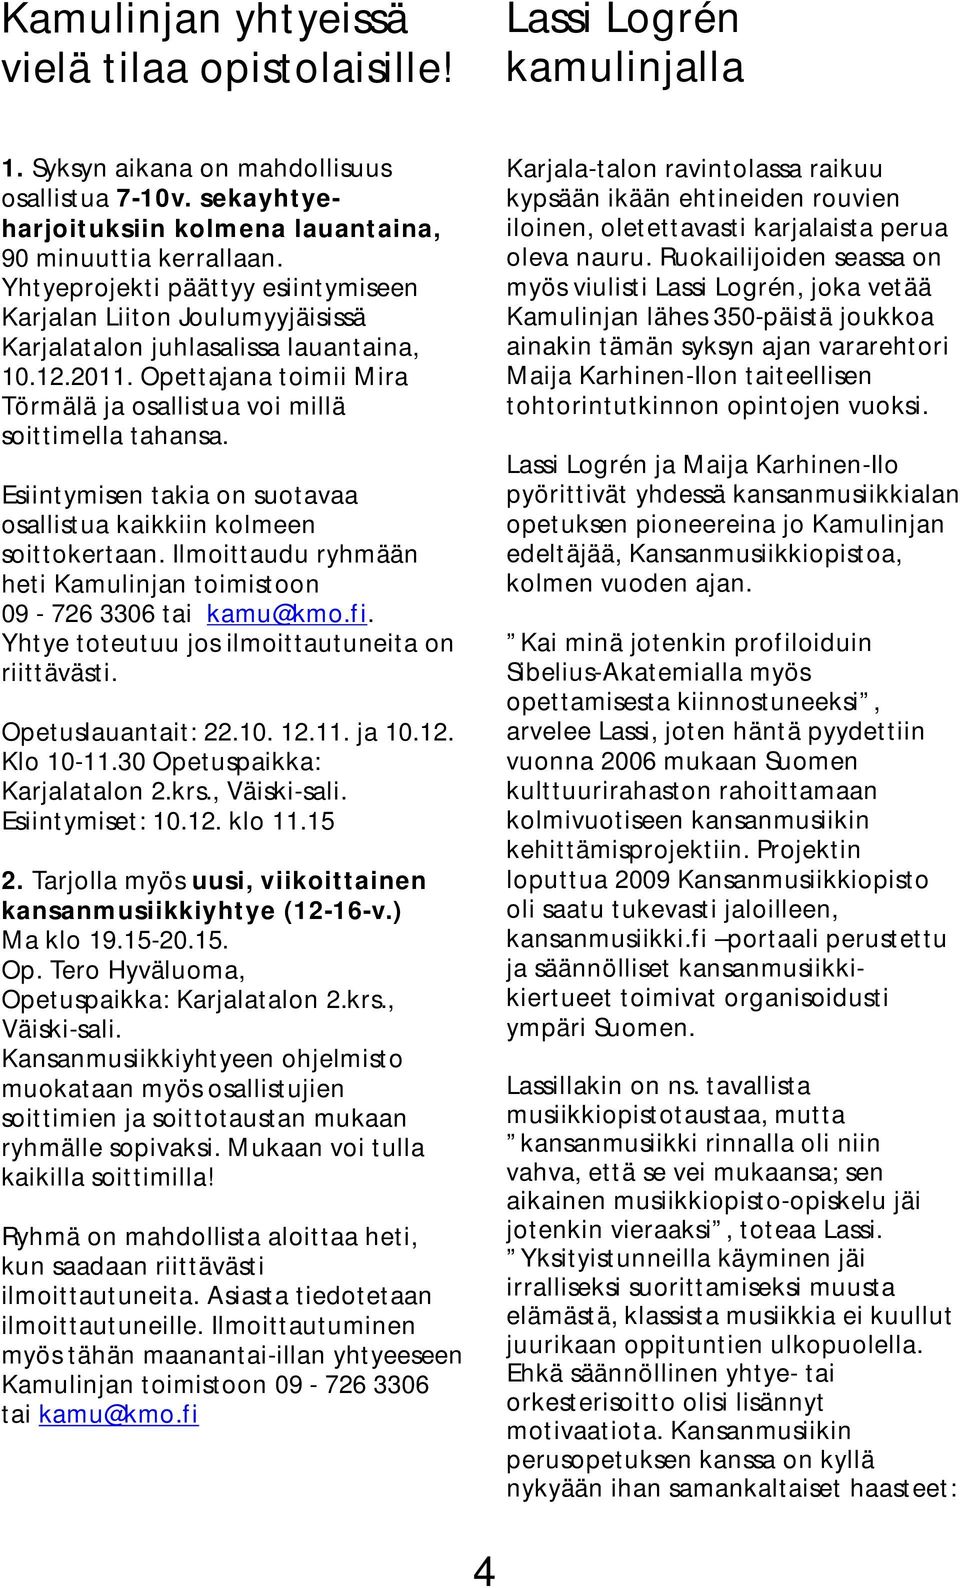 Esiintymisen takia on suotavaa osallistua kaikkiin kolmeen soittokertaan. Ilmoittaudu ryhmään heti Kamulinjan toimistoon 09-726 3306 tai kamu@kmo.fi.